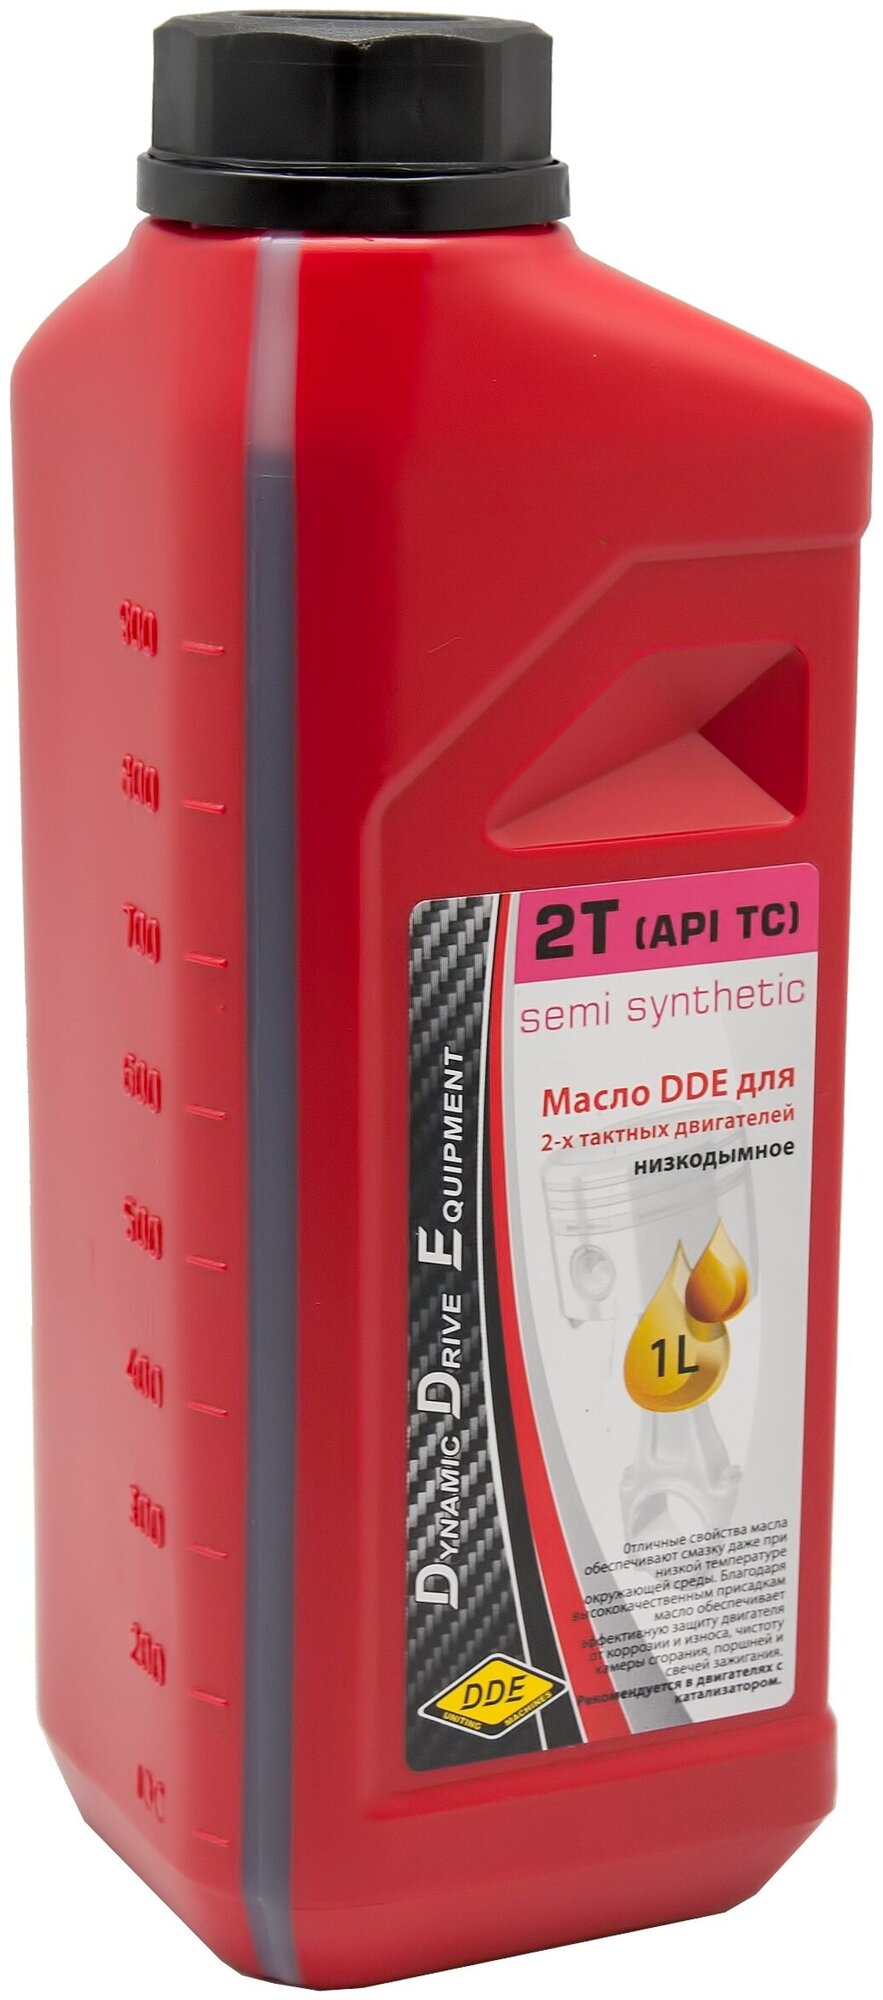 Полусинтетическое моторное масло DDE 2T (API TС), 1 л, 1 кг